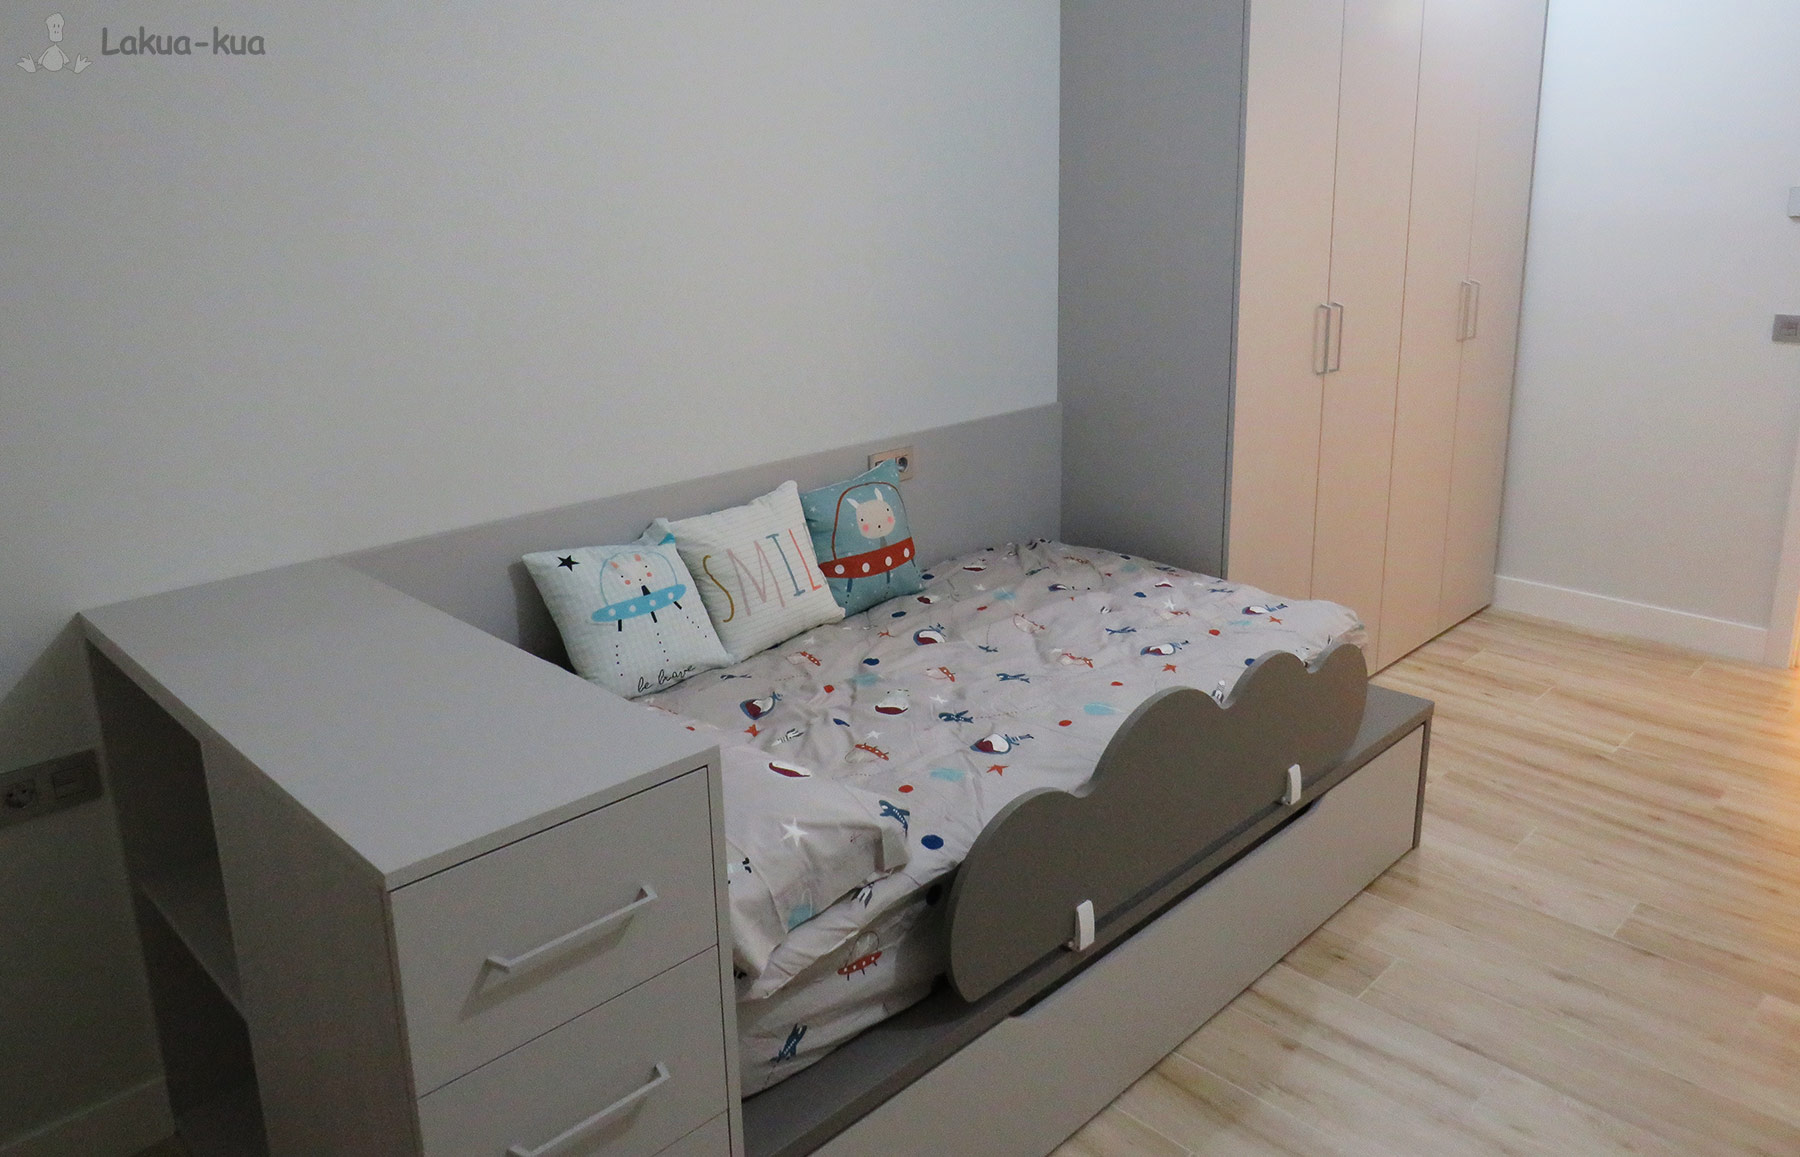 Habitación completa - Dormitorio Joven Infantil Juvenil Muebles Lakua-kua